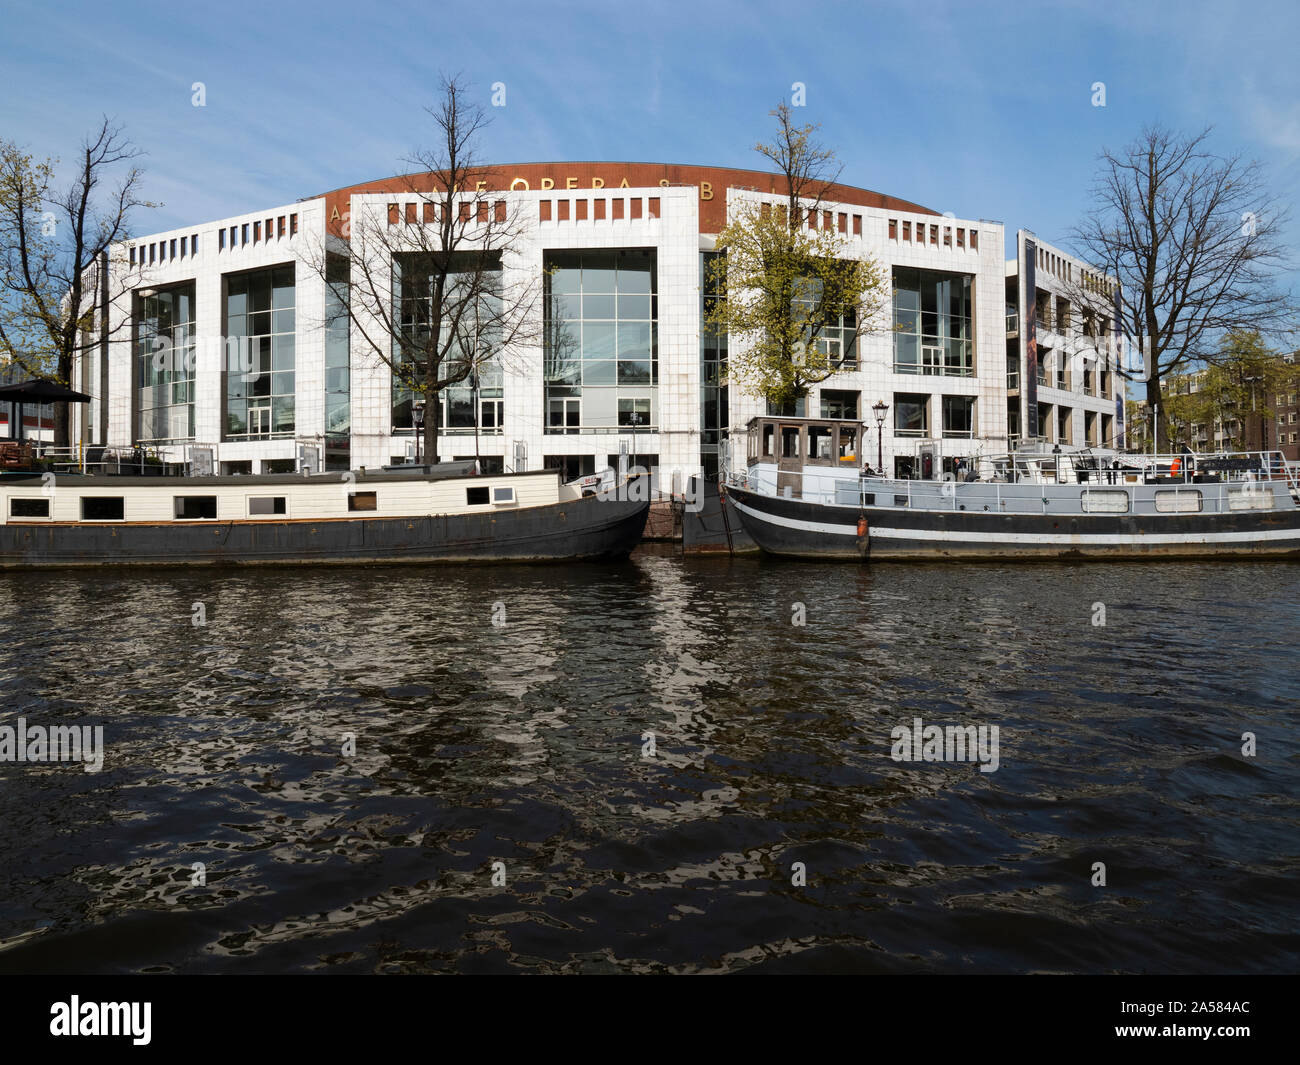 Stopera L'opéra et le ballet des capacités sur le bord de la rivière Amstel, Amsterdam, Hollande du Nord, Pays-Bas Banque D'Images